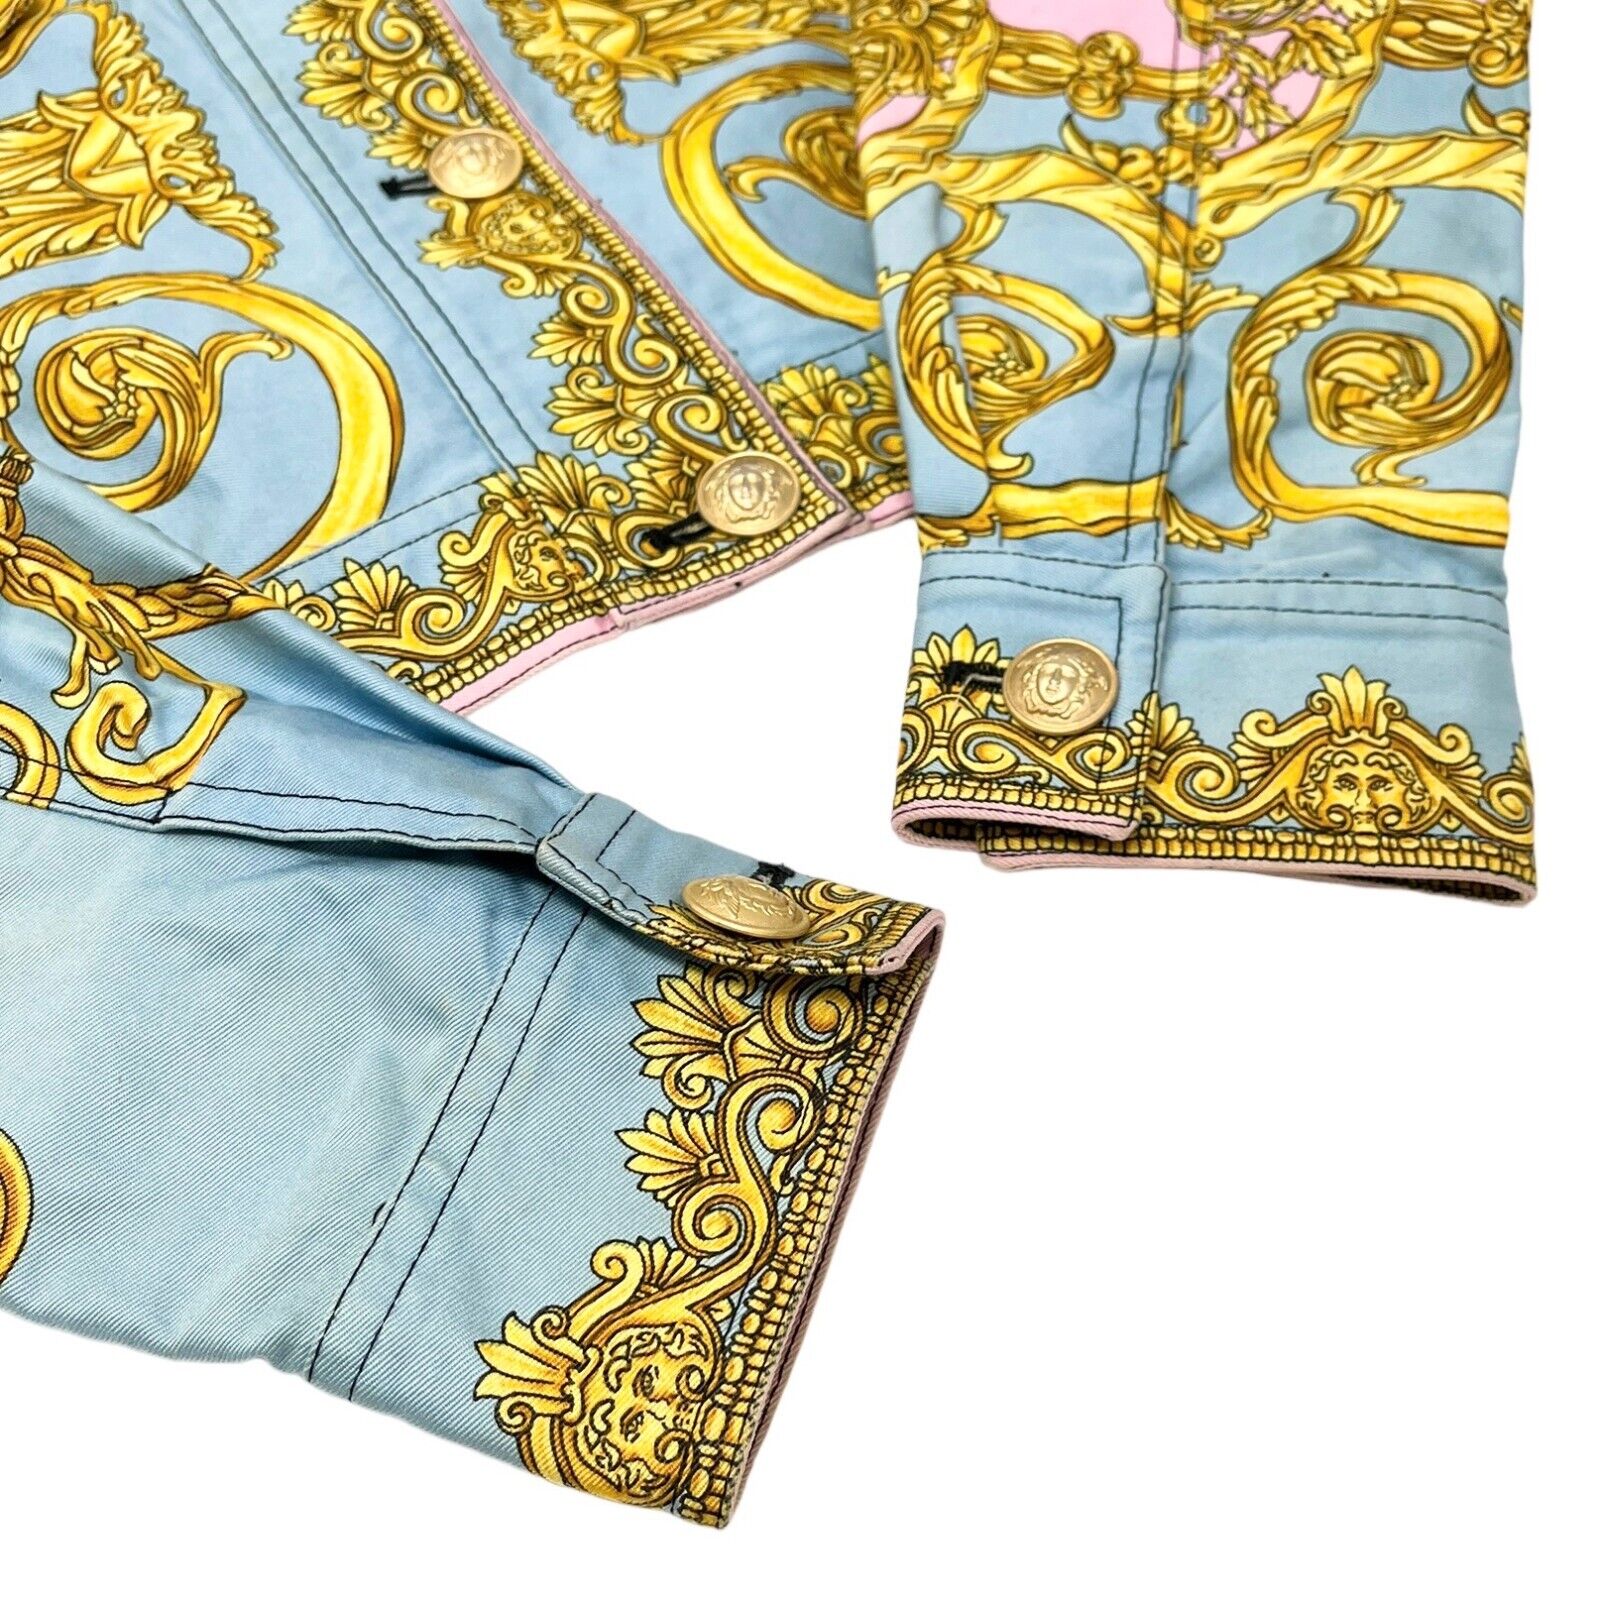 GIANNI VERSACE Vintage 1992 Medusa Baroque Denim Jacket Pink Blue Gold Rank AB